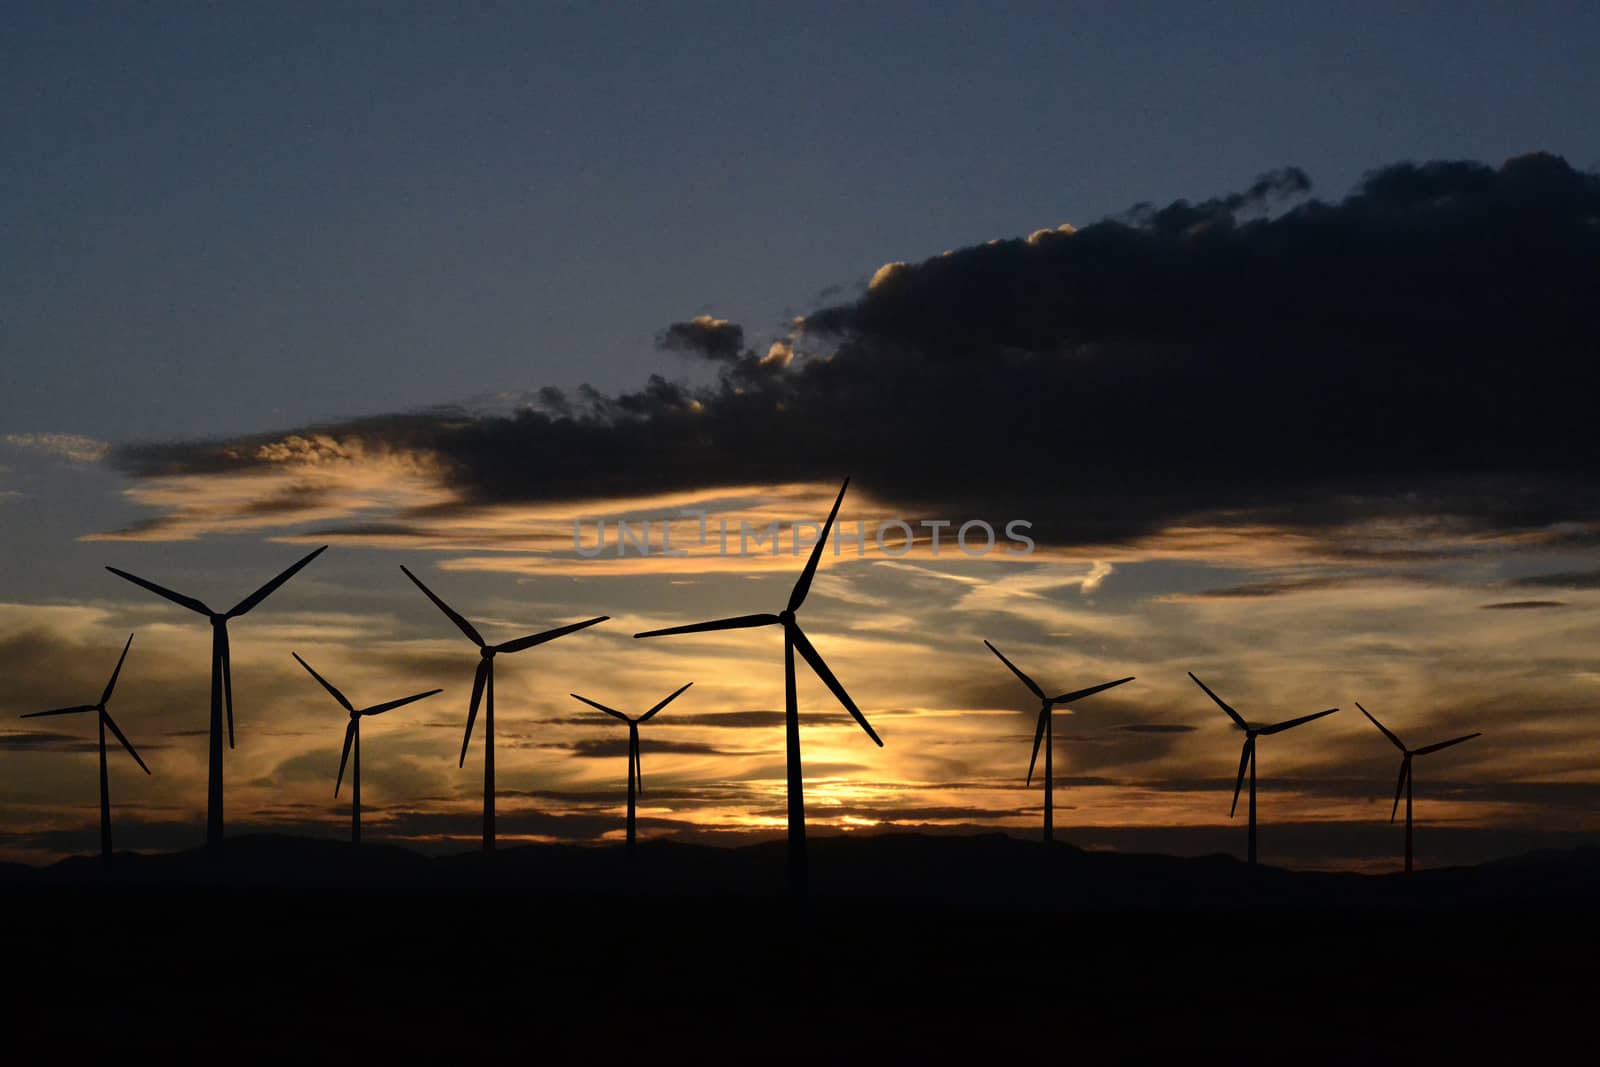 Wind turbine at twilight by hibrida13